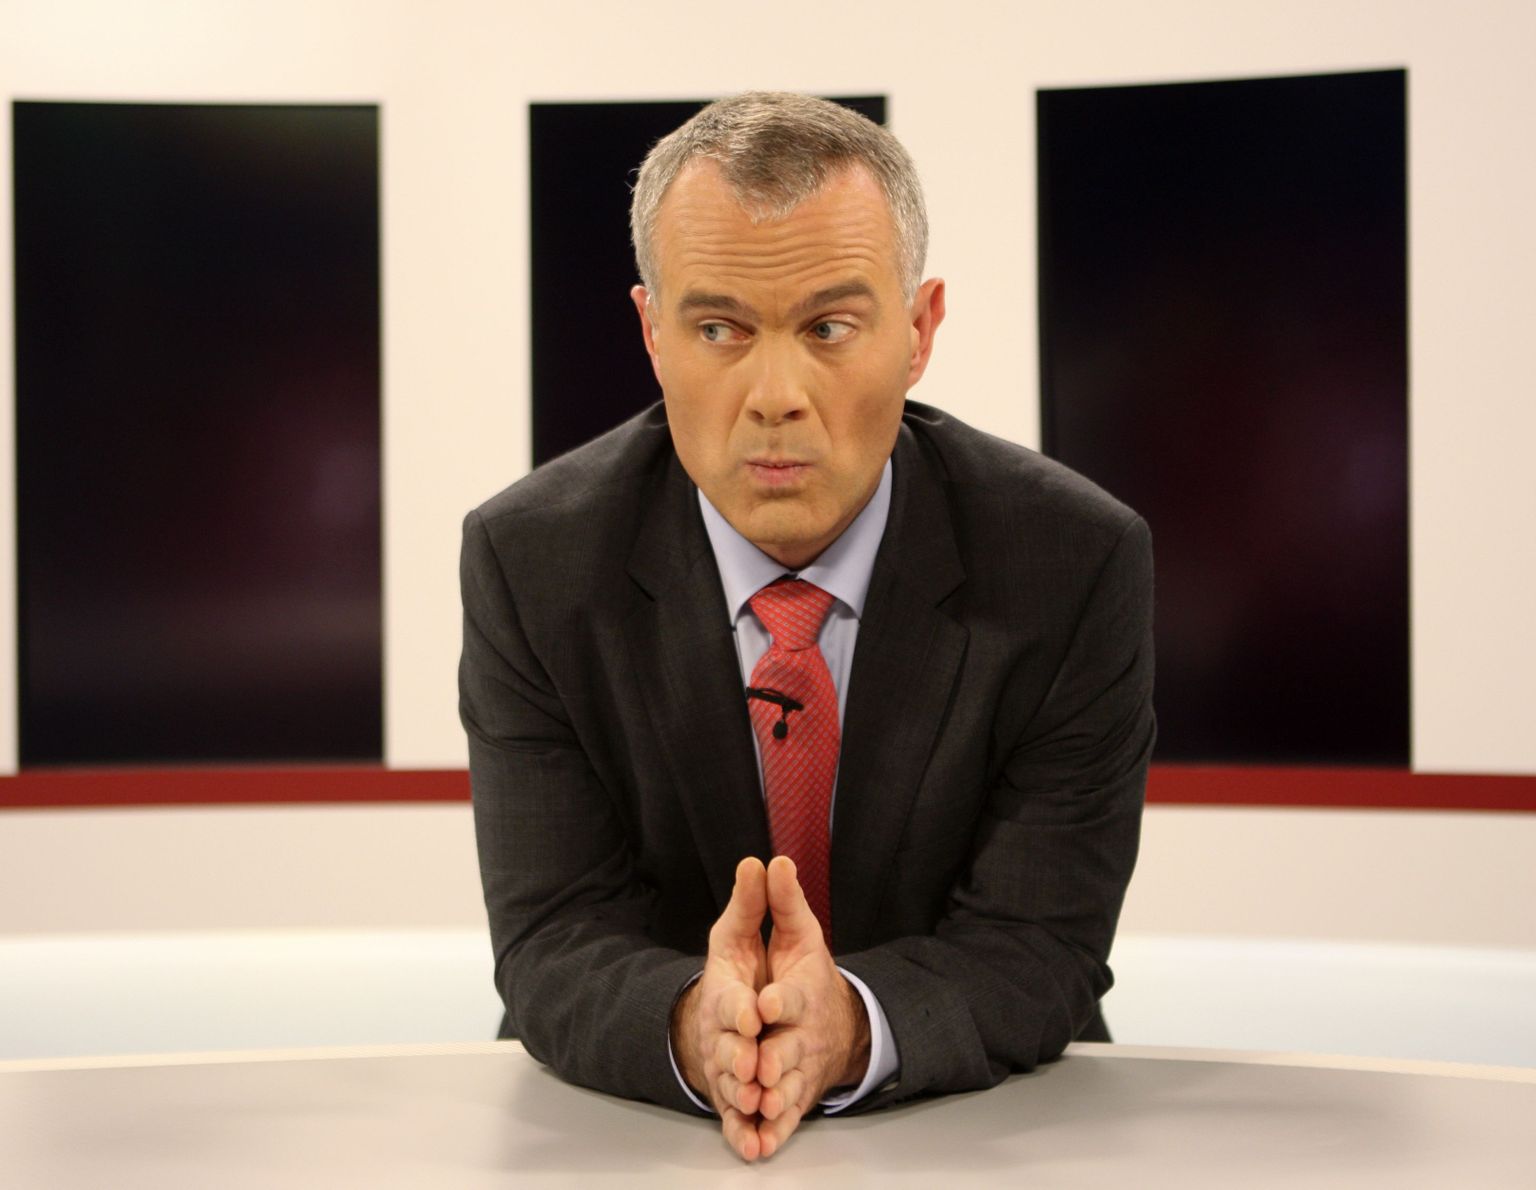 TV3 uudistejuht Mart Mardisalu kinnitab, et päevauudised pole müügiks olnud ja neid ei hakata müüma ka tulevikus.